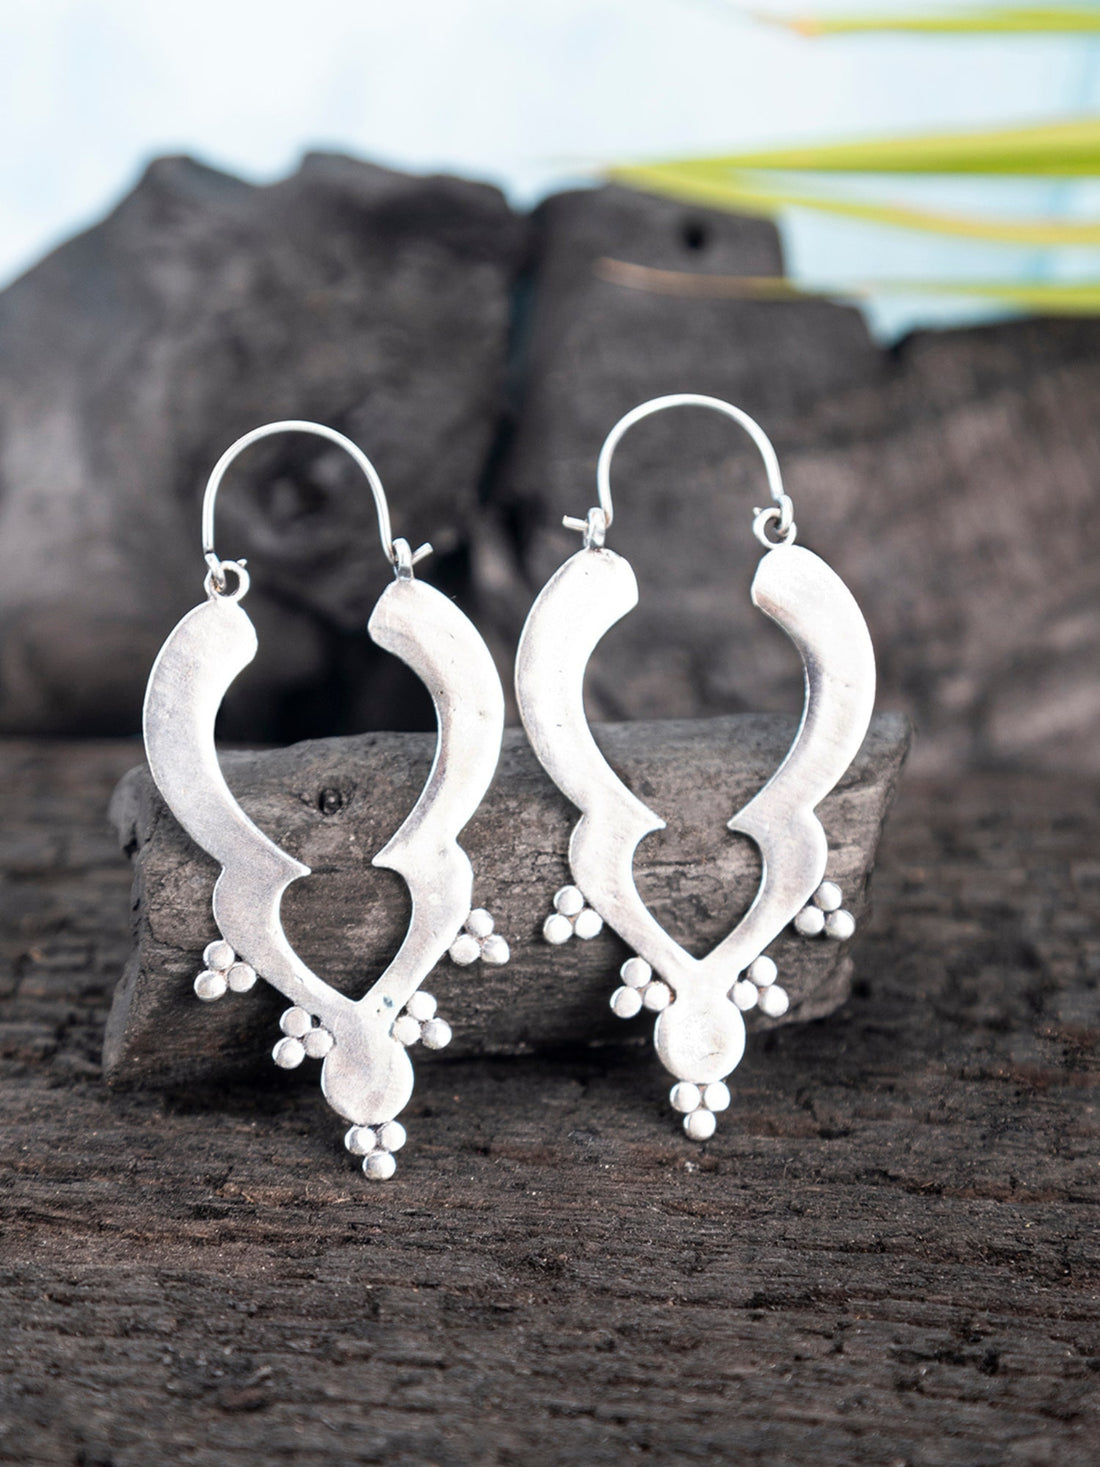 Festive Wear Hoops Earrings - Western Silver-Plated Brass Earrings By Studio One Love